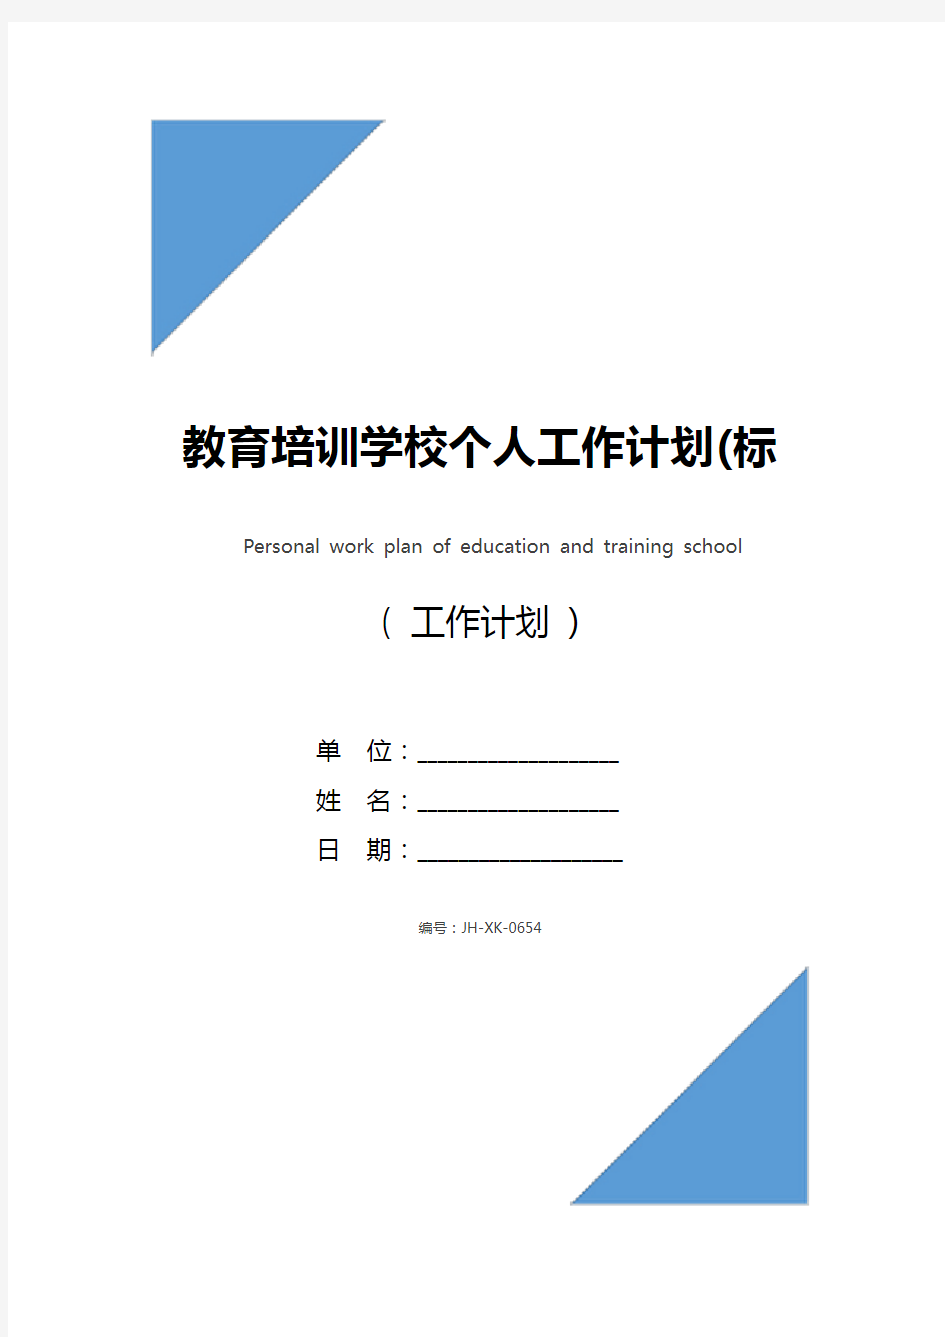 教育培训学校个人工作计划(标准版)